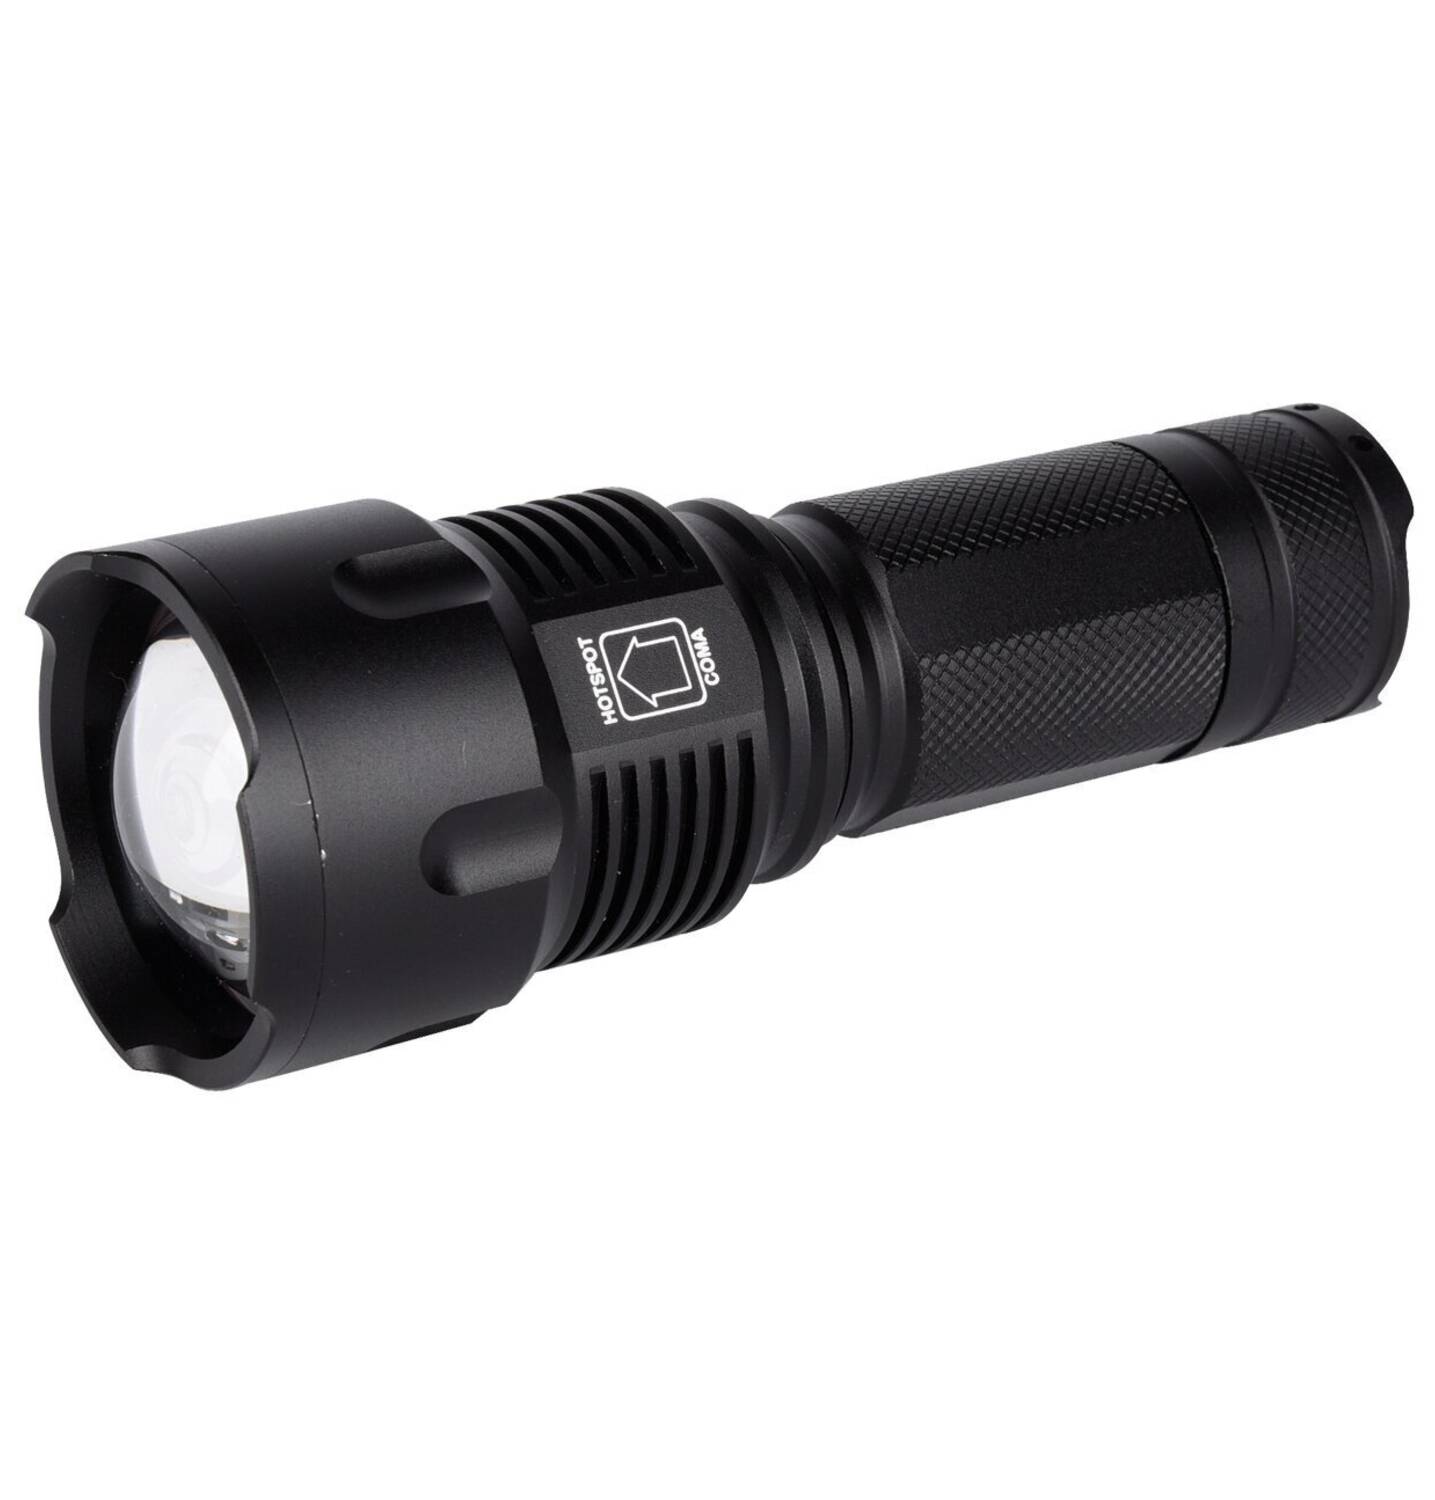 Taschenlampe XL Zoom LED